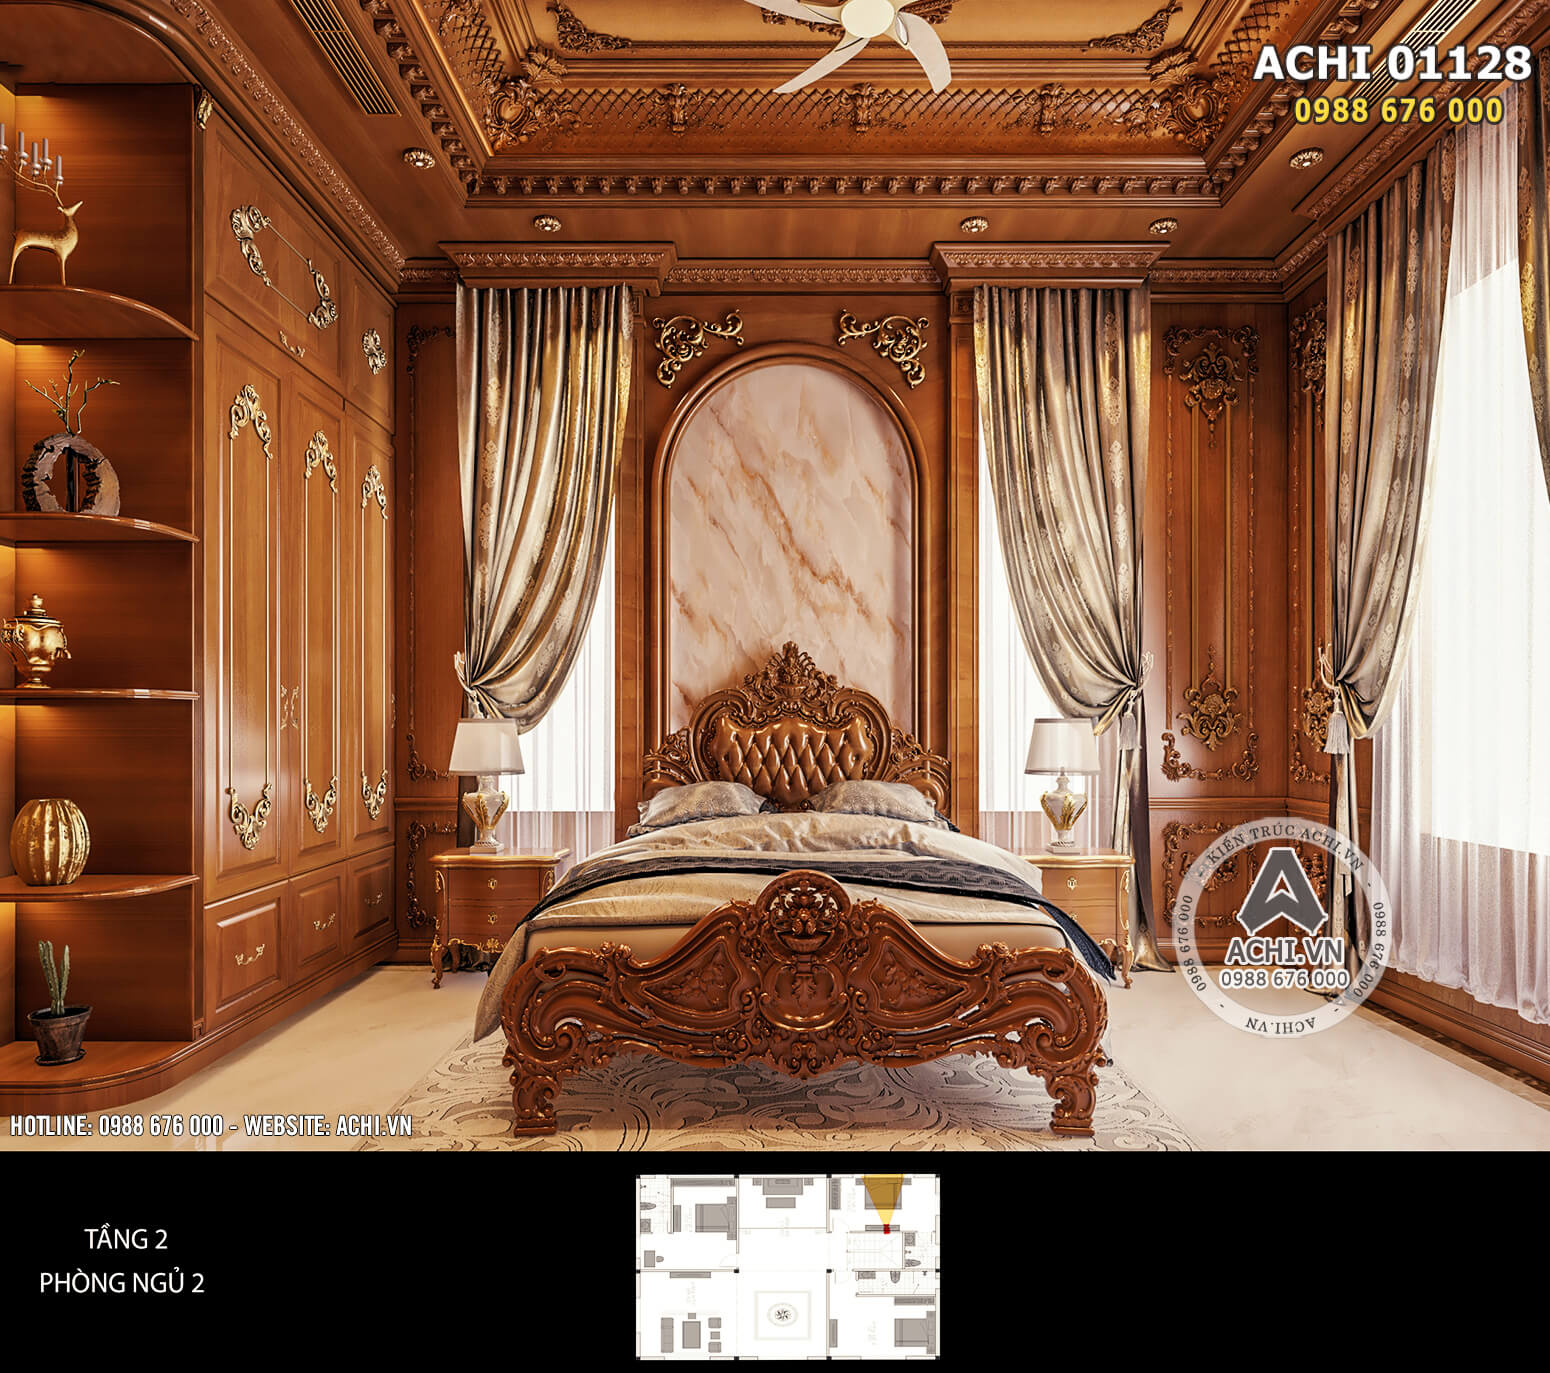 Mẫu thiết kế nội thất phòng ngủ tầng 2 mang phong cách kiến trúc tân cổ điển